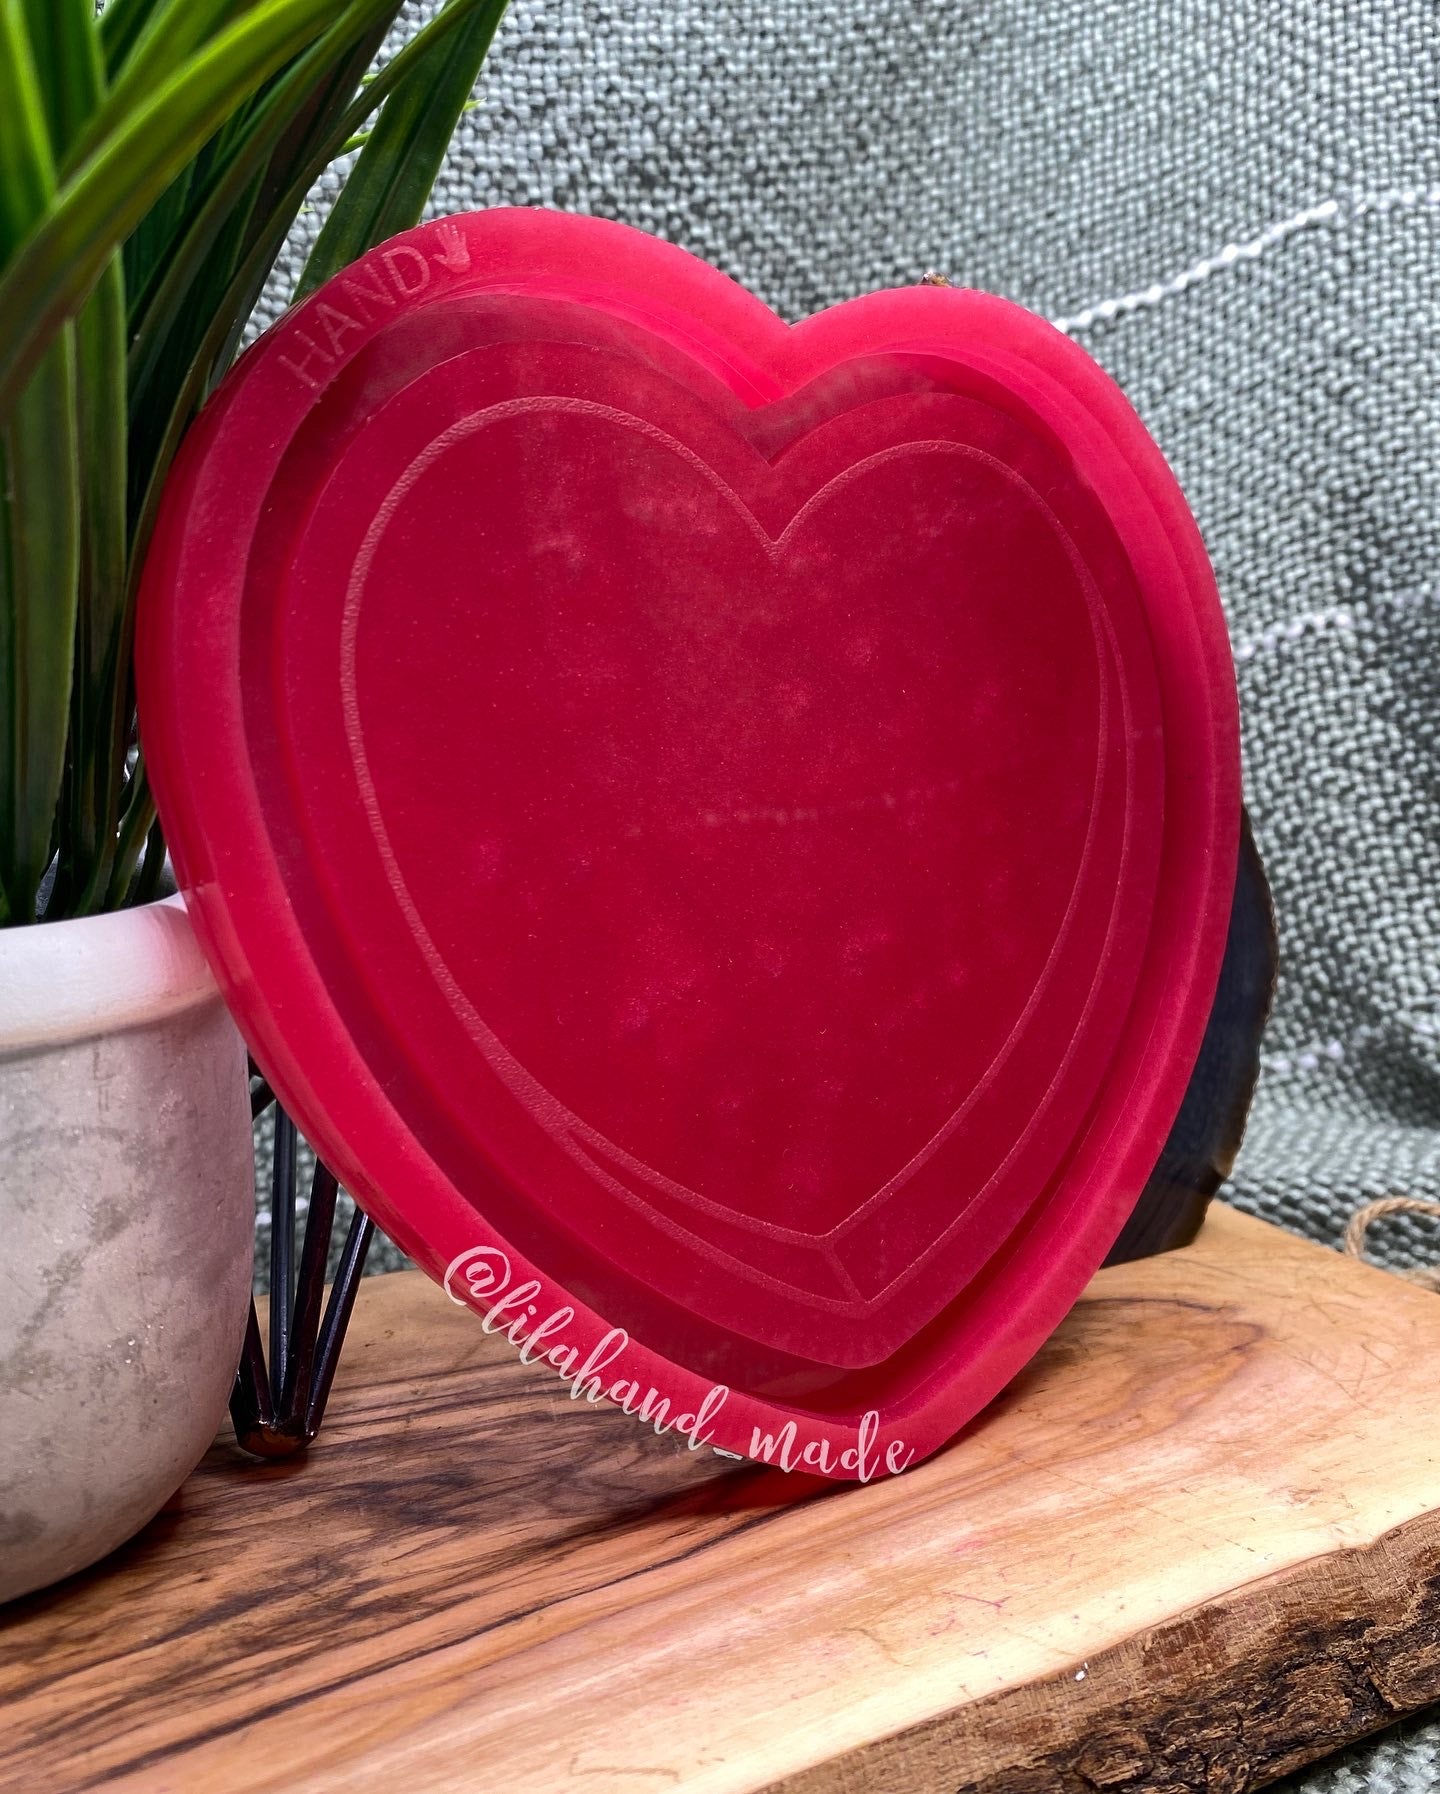 conversation heart tray mold